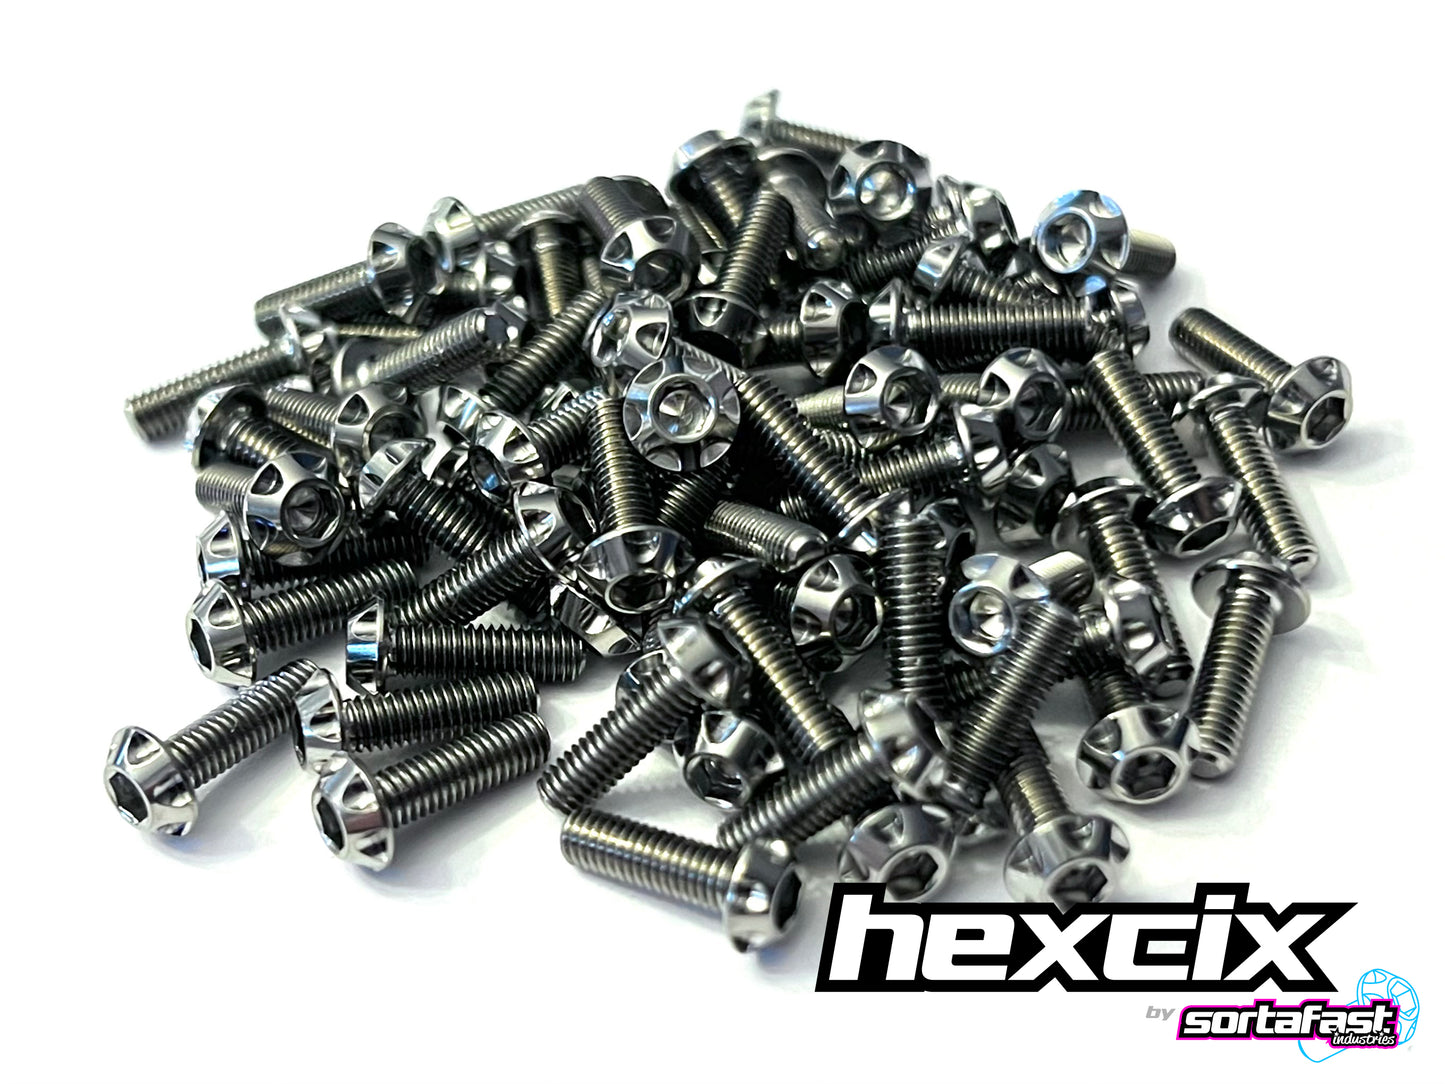 Sortafast Hexcix Titanium Screws - Motor Screws - 2pk (Metric)